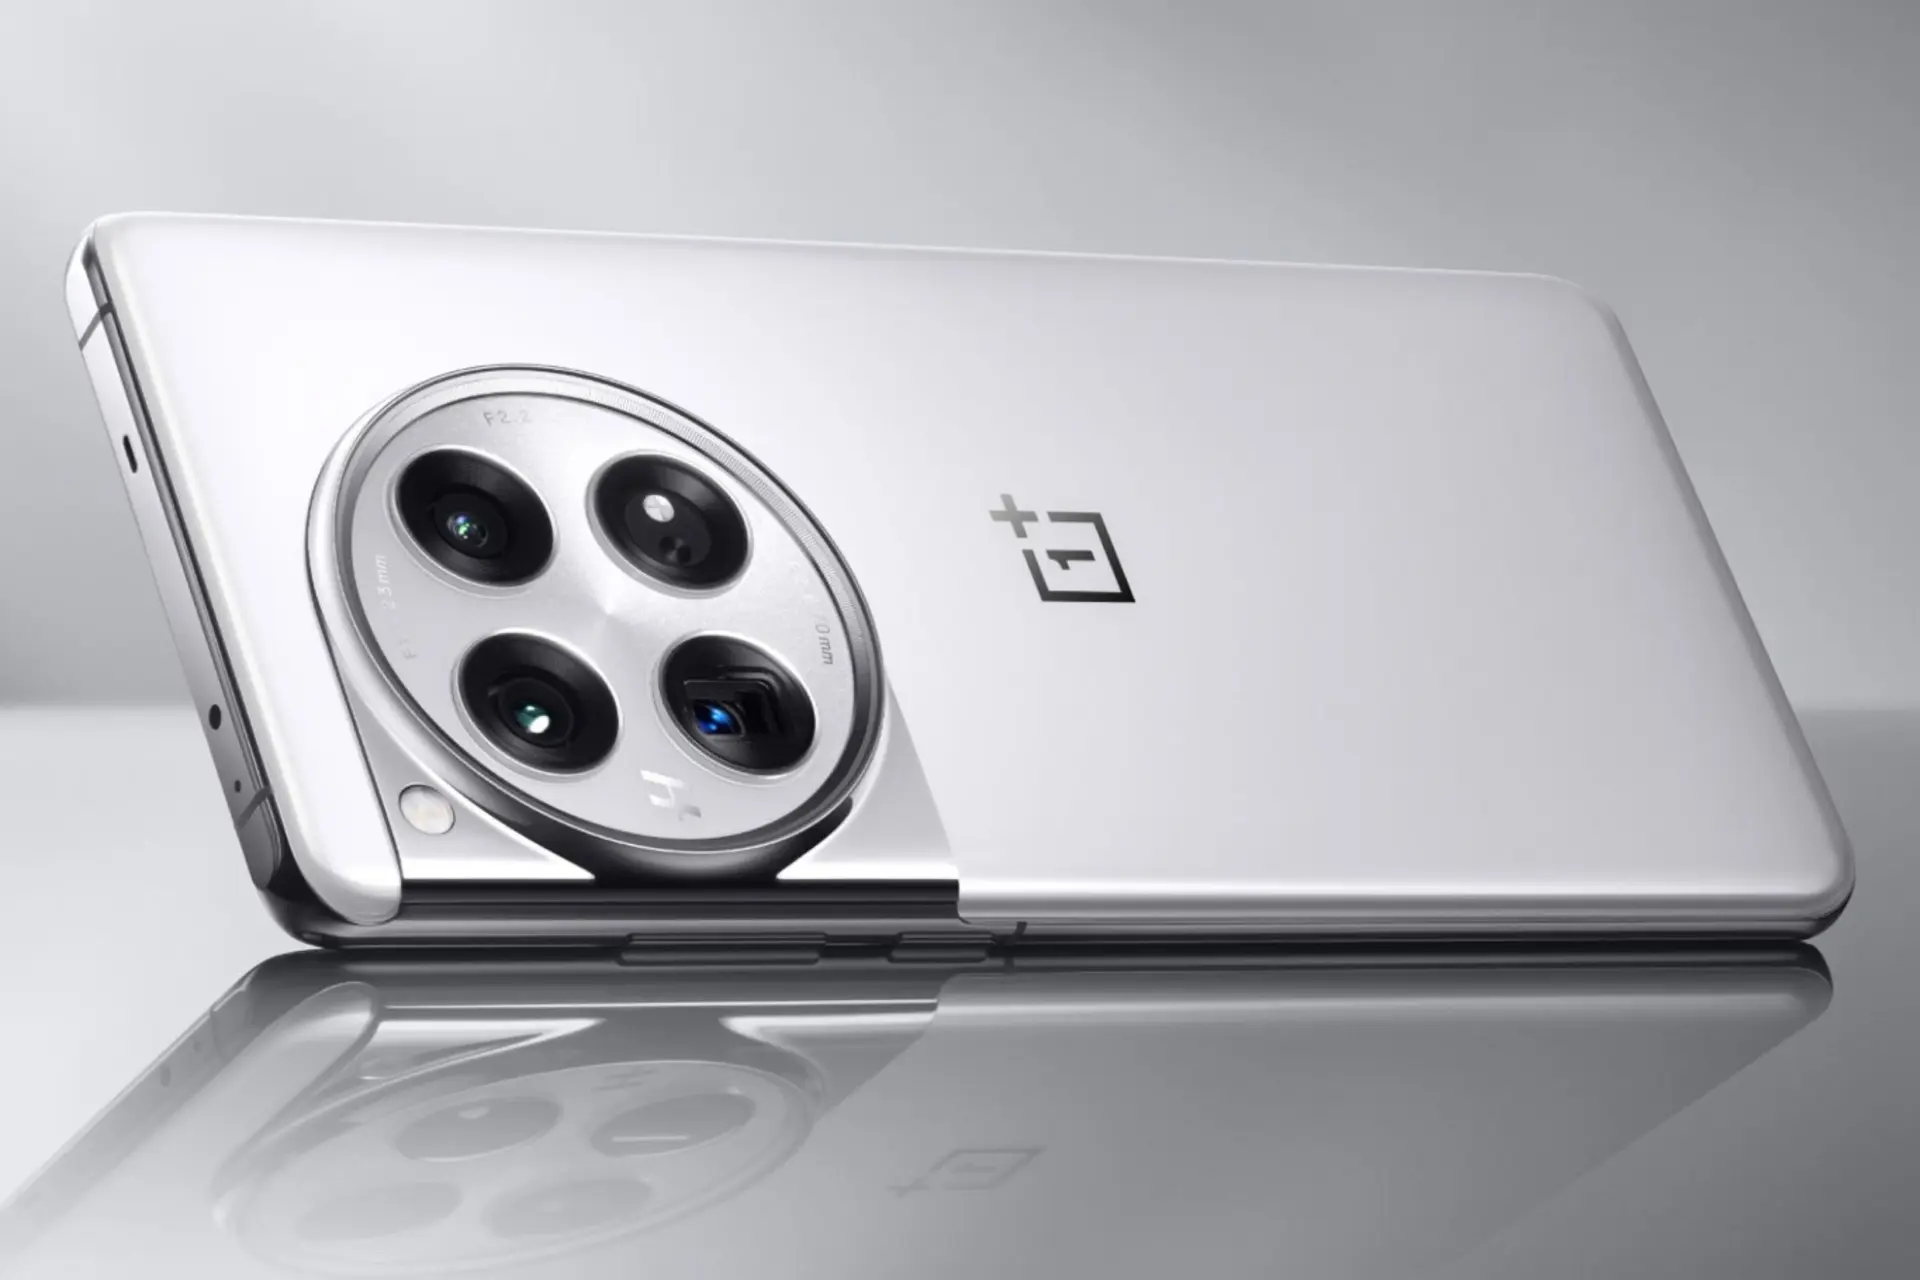 پنل پشت گوشی موبایل وان پلاس 12 | OnePlus 12 نقره ای و چینش دوربین